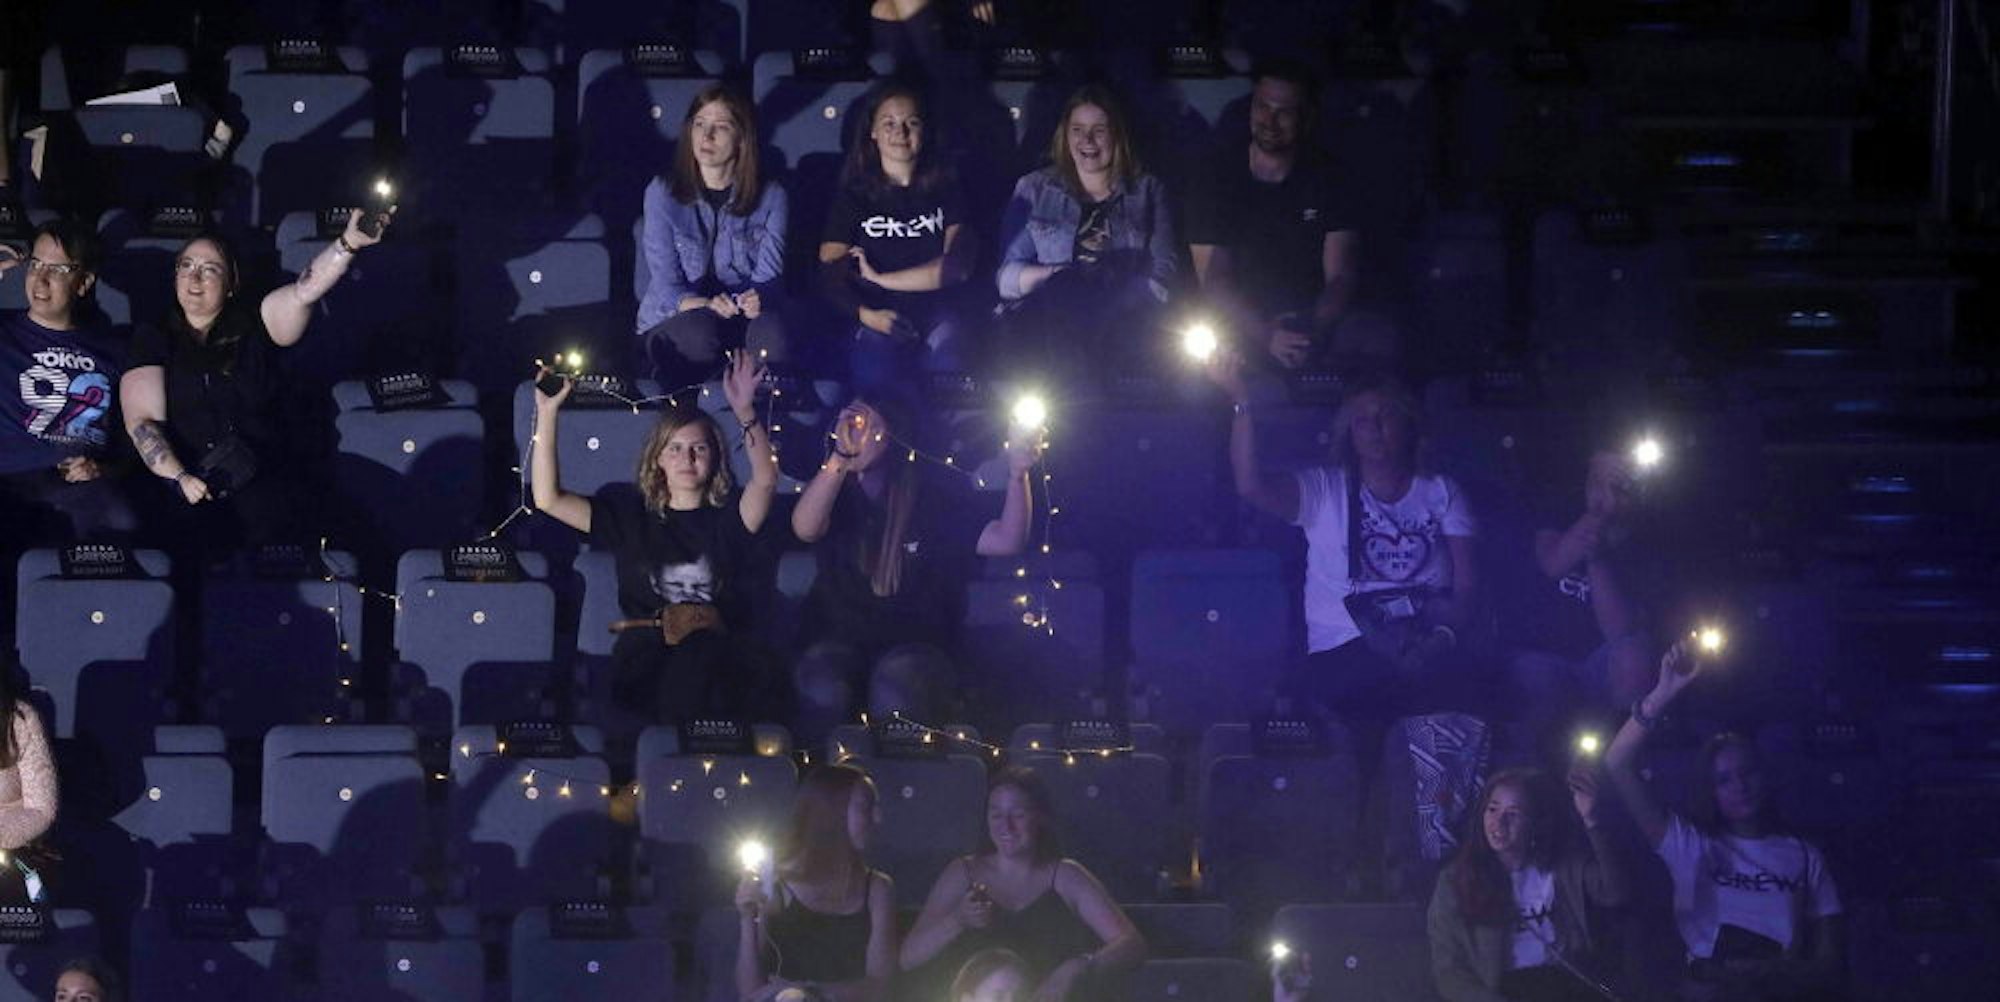 Besucher beim Konzertbesuch in der Lanxess-Arena